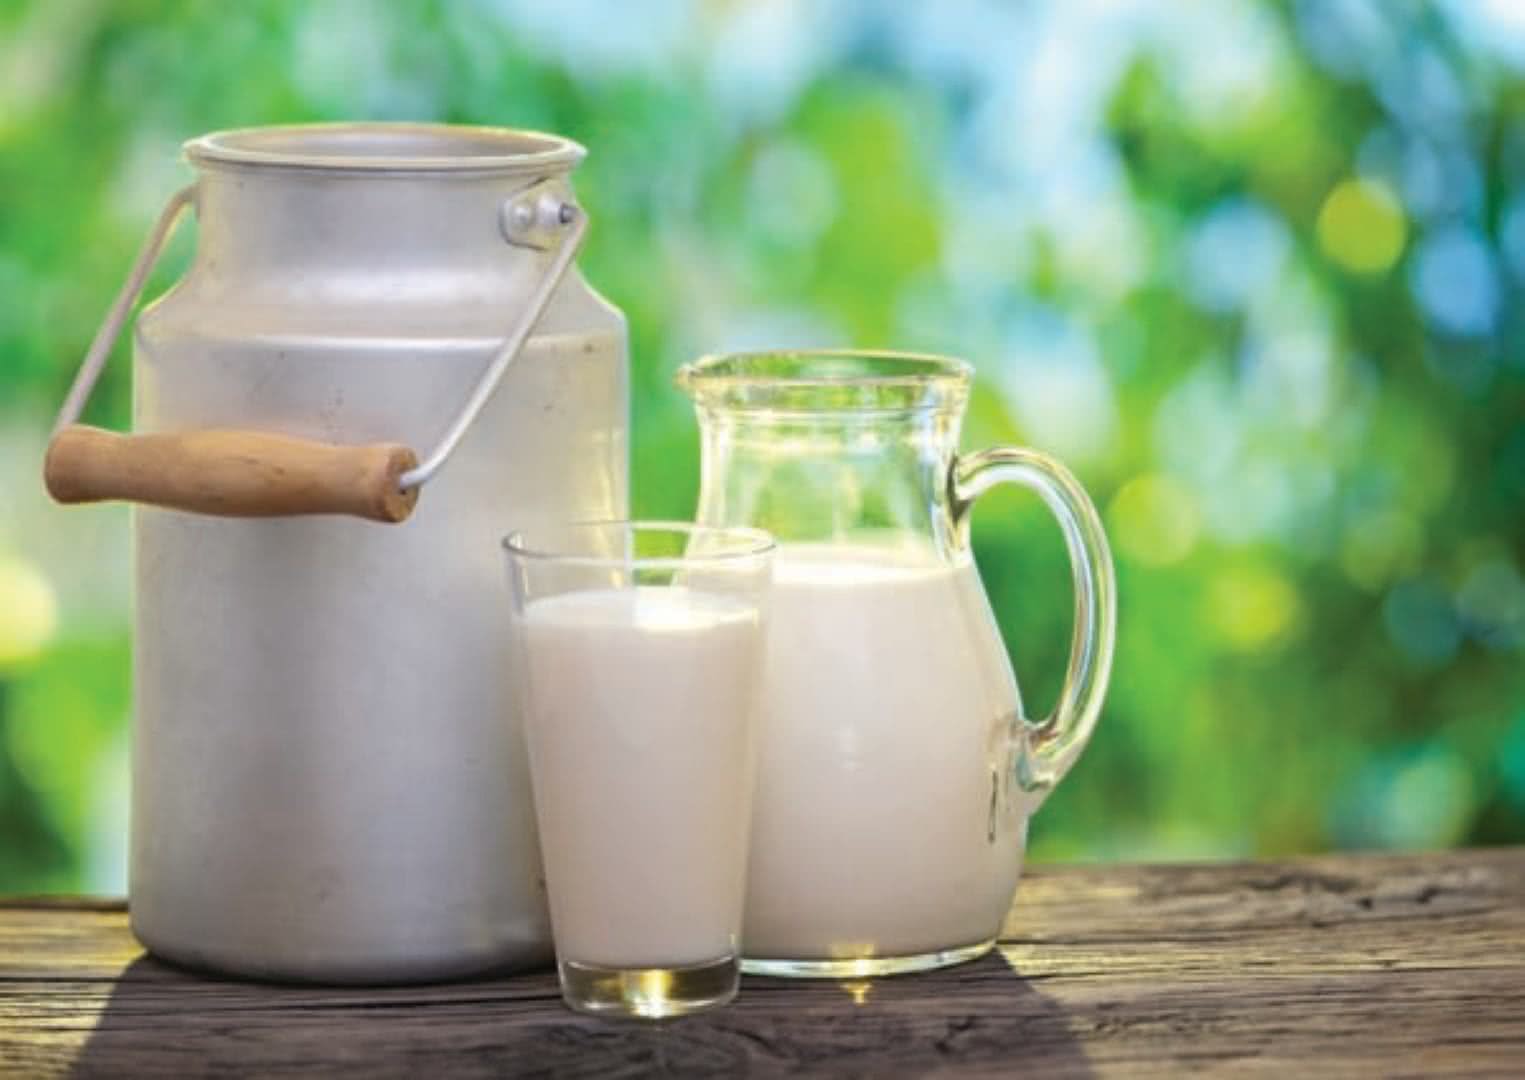 Preço do leite ao produtor registrou a quinta alta consecutiva em maio